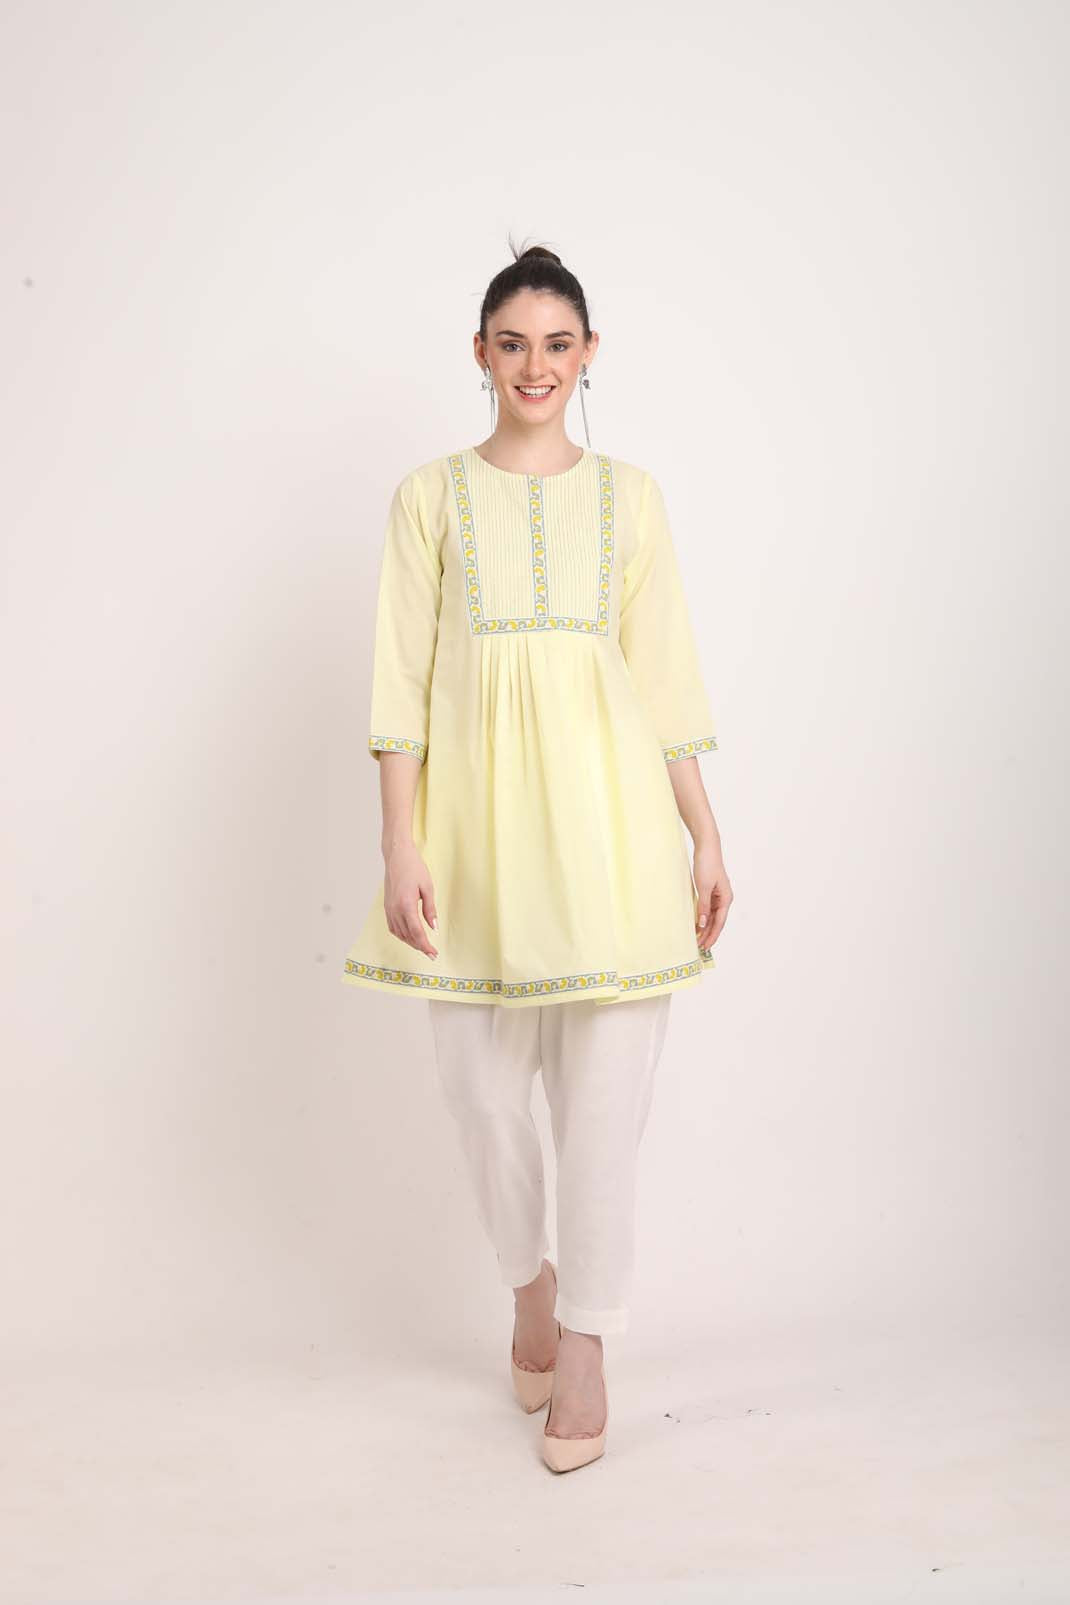 Cotton Work Designer Kurtis at Rs 350 | Ladies Designer Kurtis in Surat |  ID: 13568384655